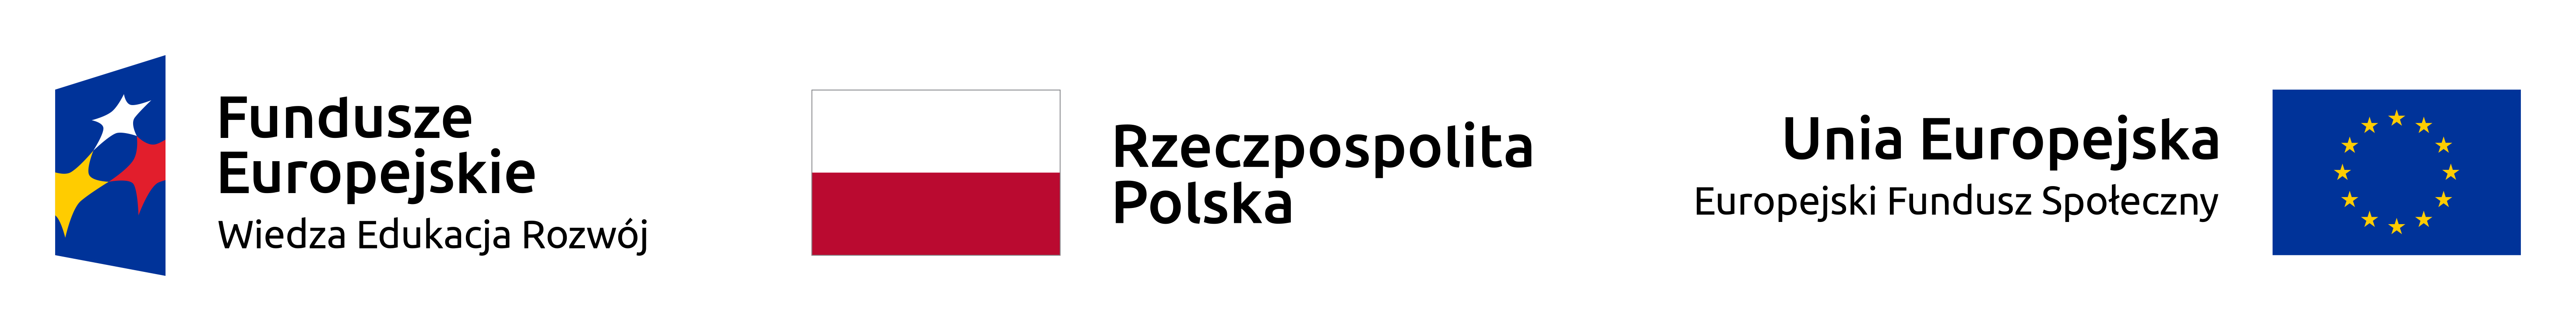 Fundusze Europejskie, Rzeczpospolita Polska, Unia Europejska - logotyp